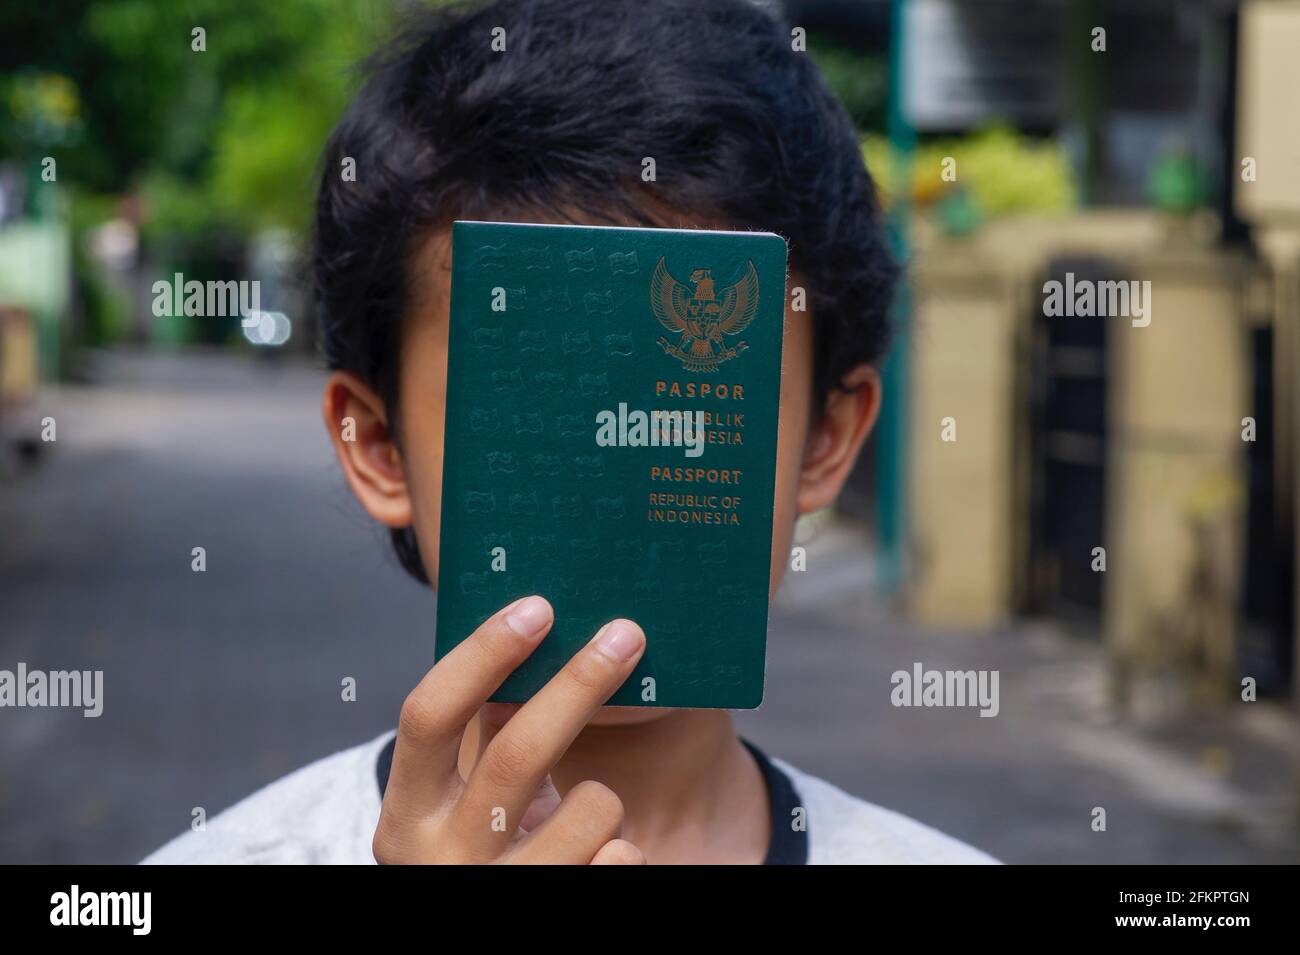 Indonesiano bambino con passaporto Repubblica di Indonesia di fronte al suo volto, selezionato fuoco. Foto Stock